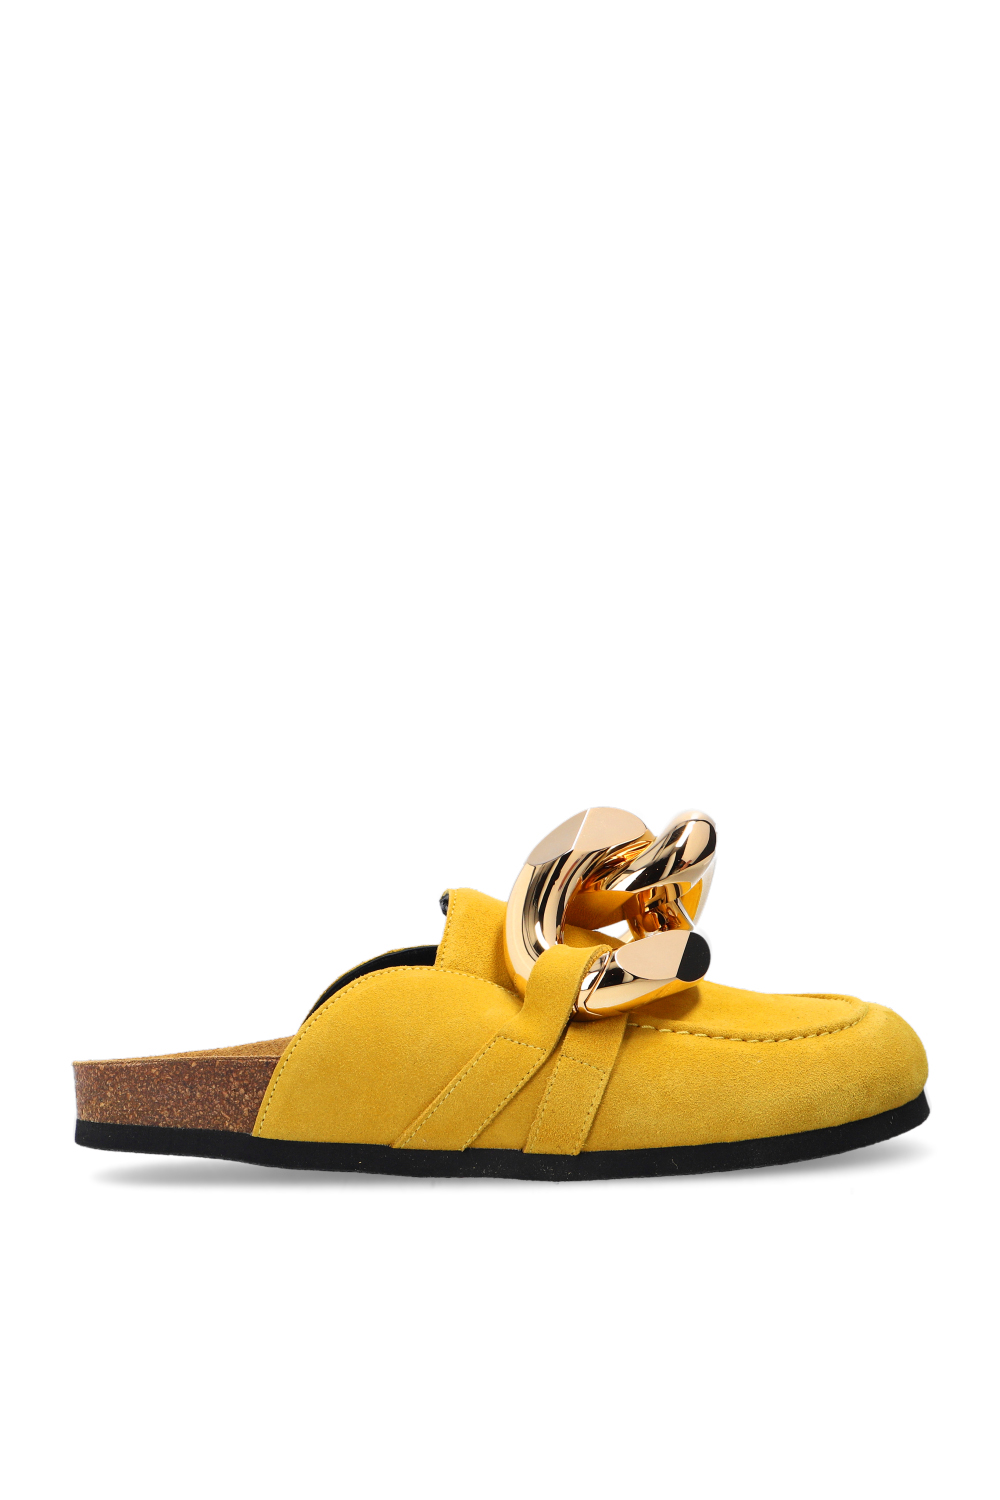 黄色麂皮穆勒鞋JW Anderson - GenesinlifeShops 中国